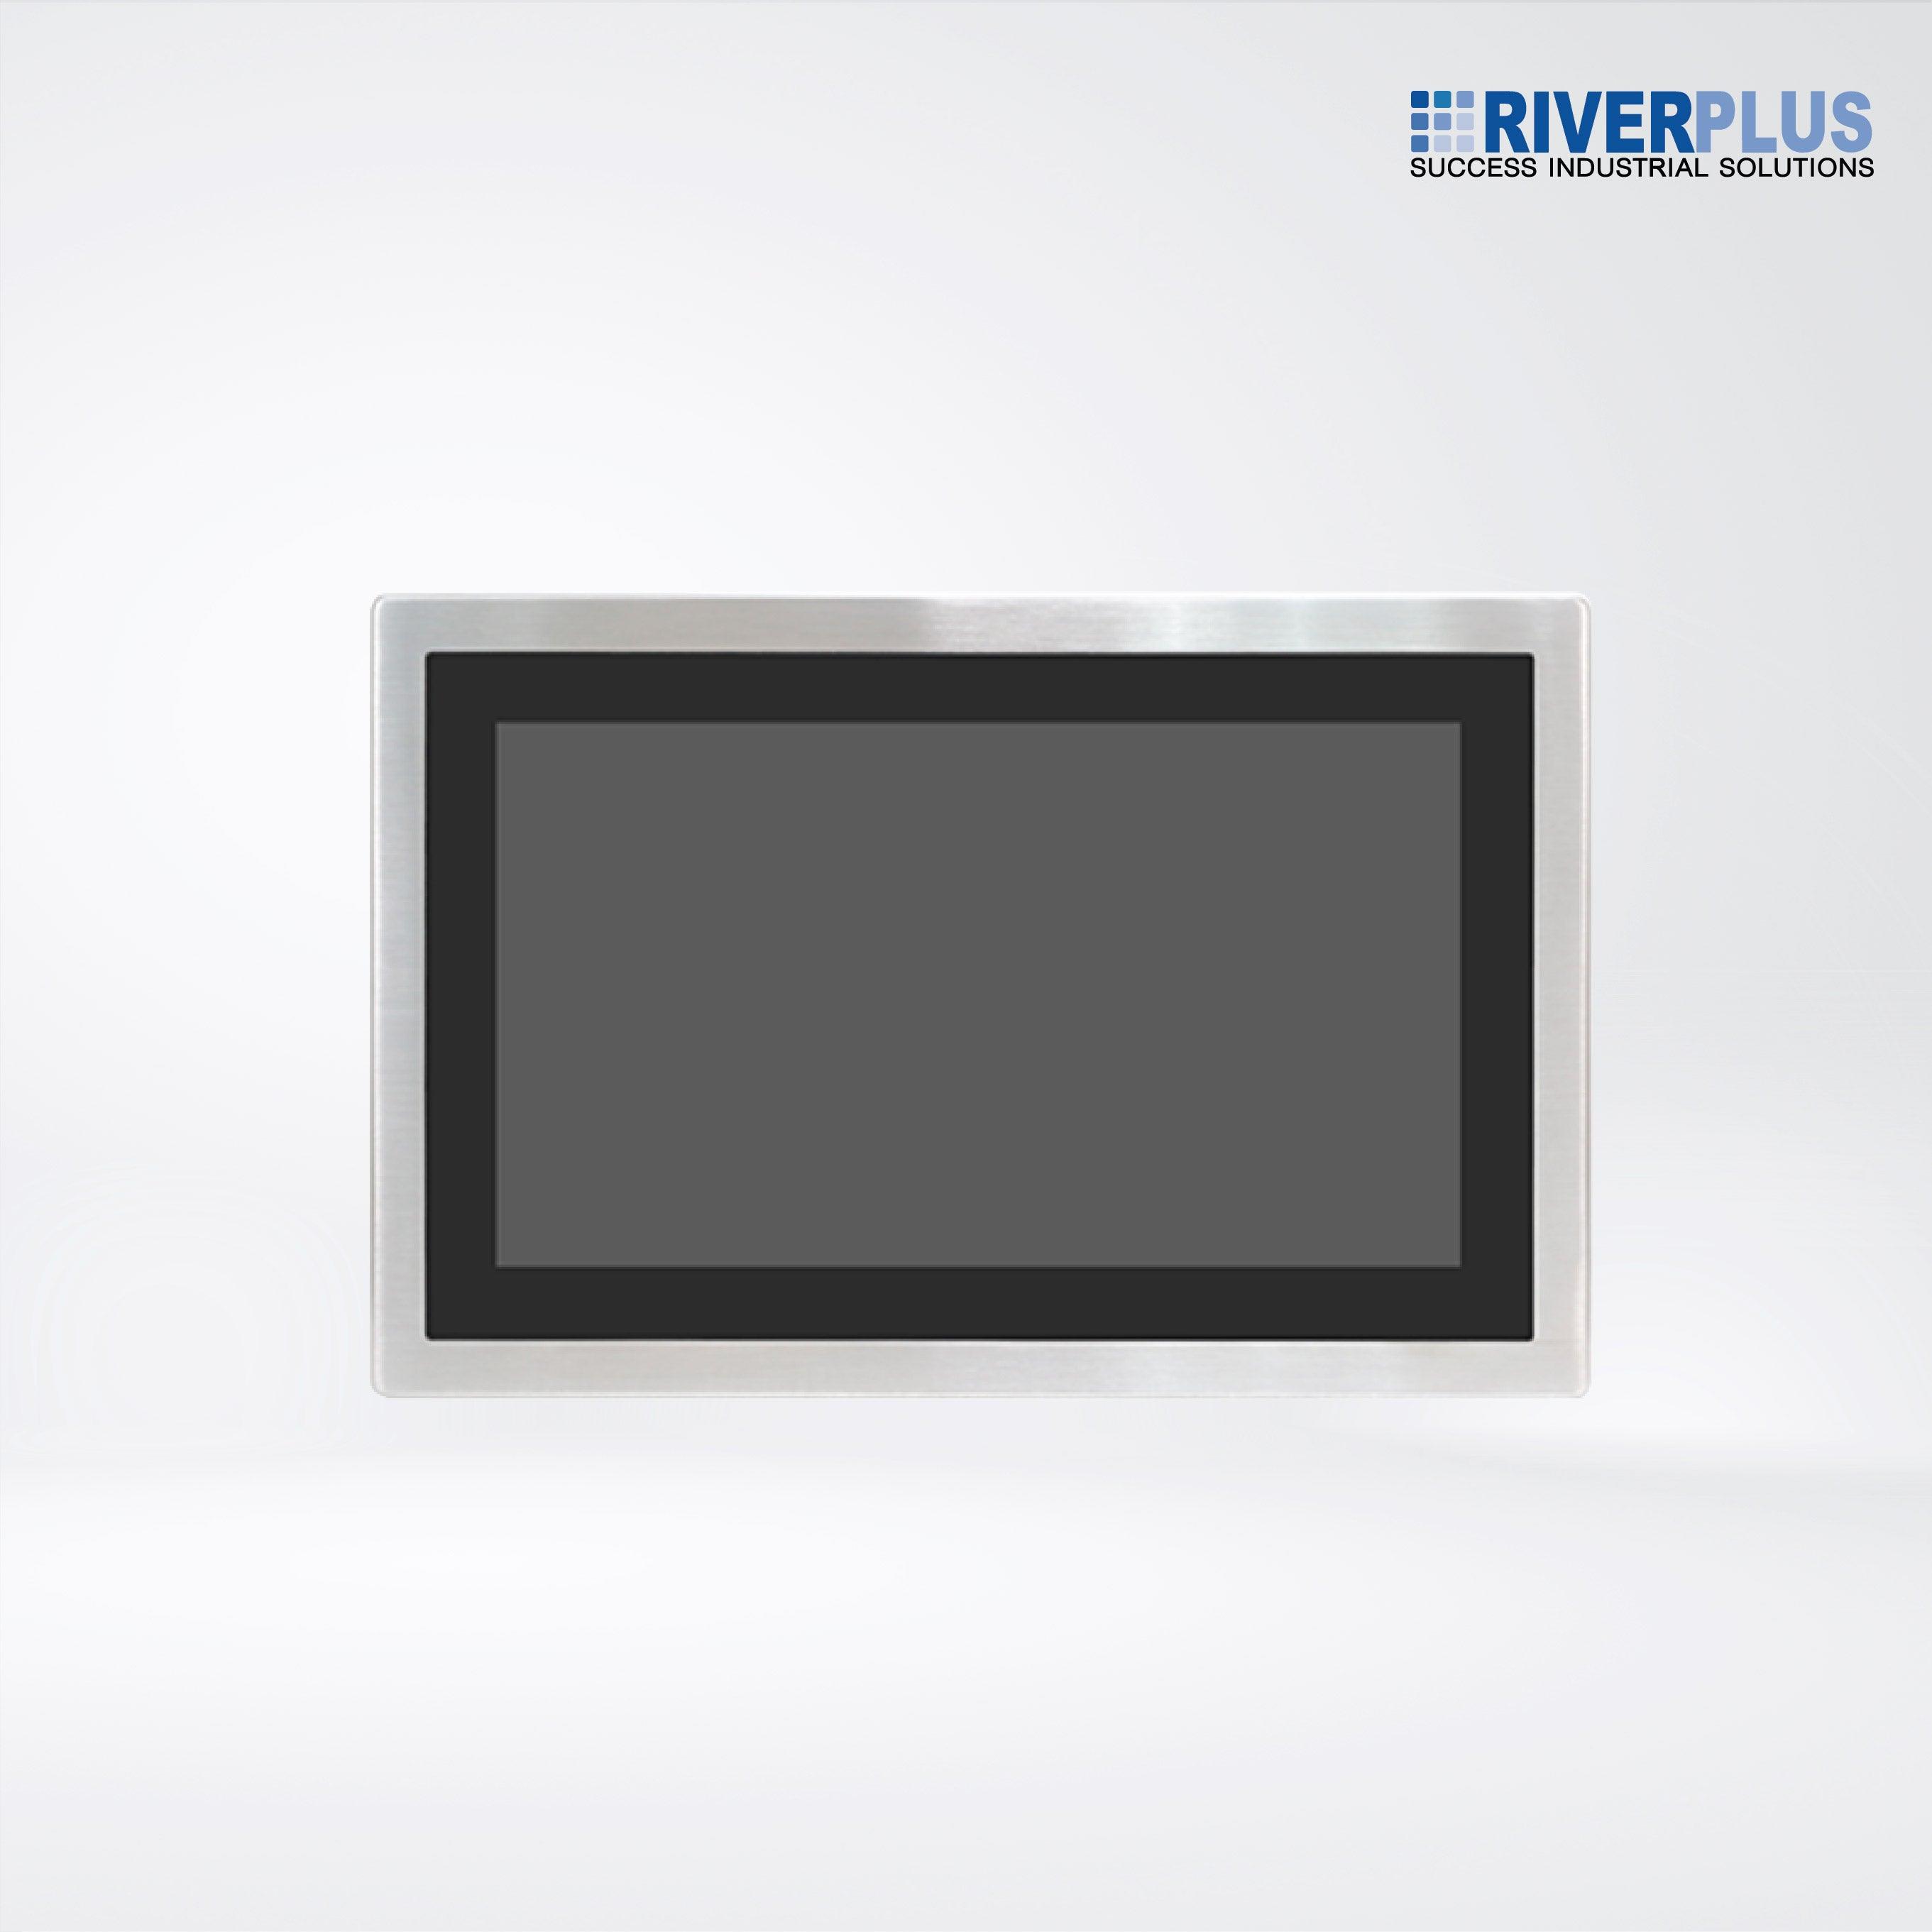 AEx-816P 15.6” Intel Celeron N2930 IP66 Stainless Steel Panel PC - Riverplus